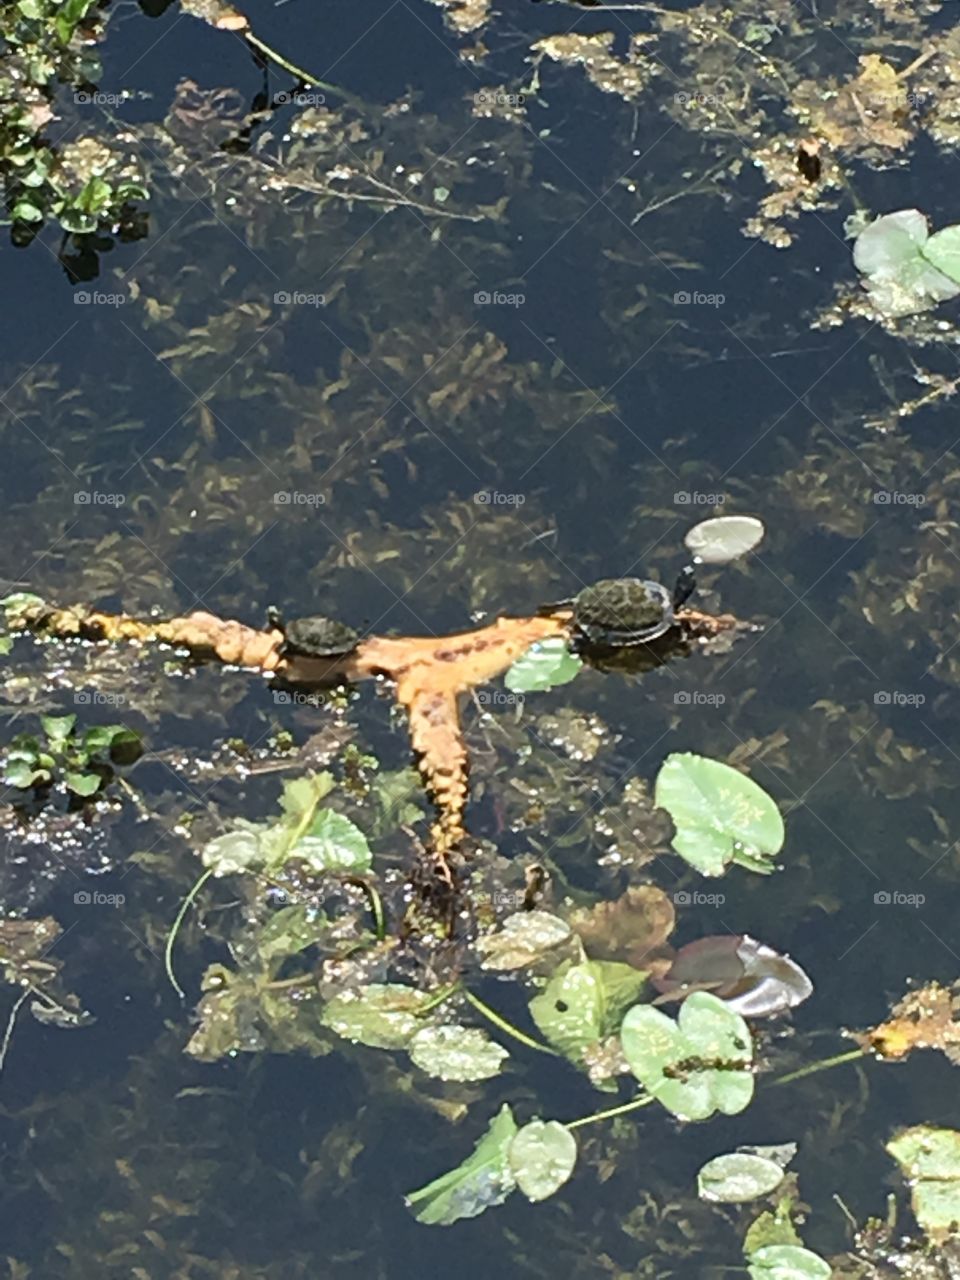 Turtles in marsh